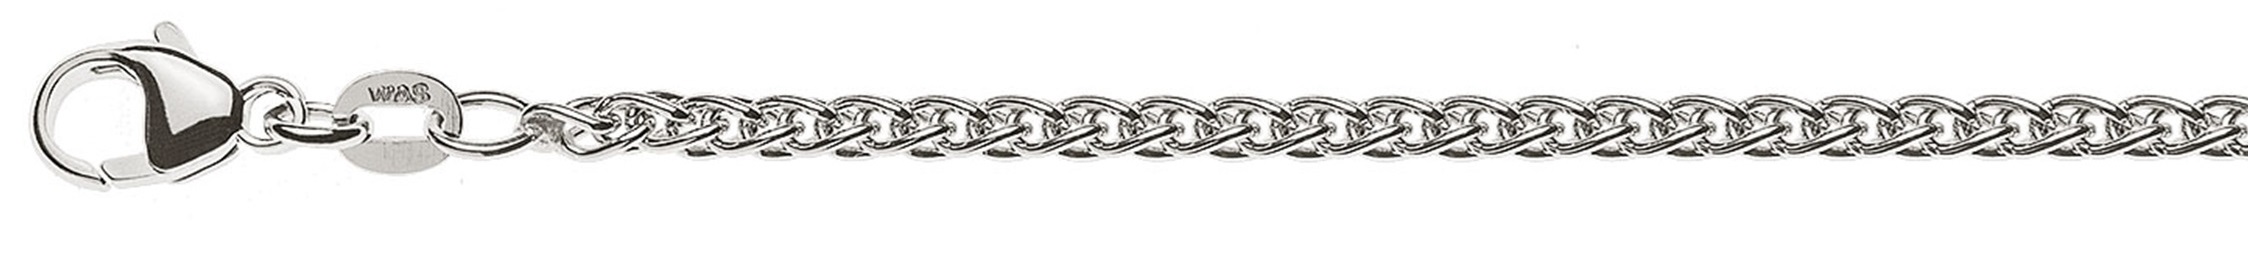 AURONOS Prestige Necklace white gold 18K cable chain 42cm 2.5mm